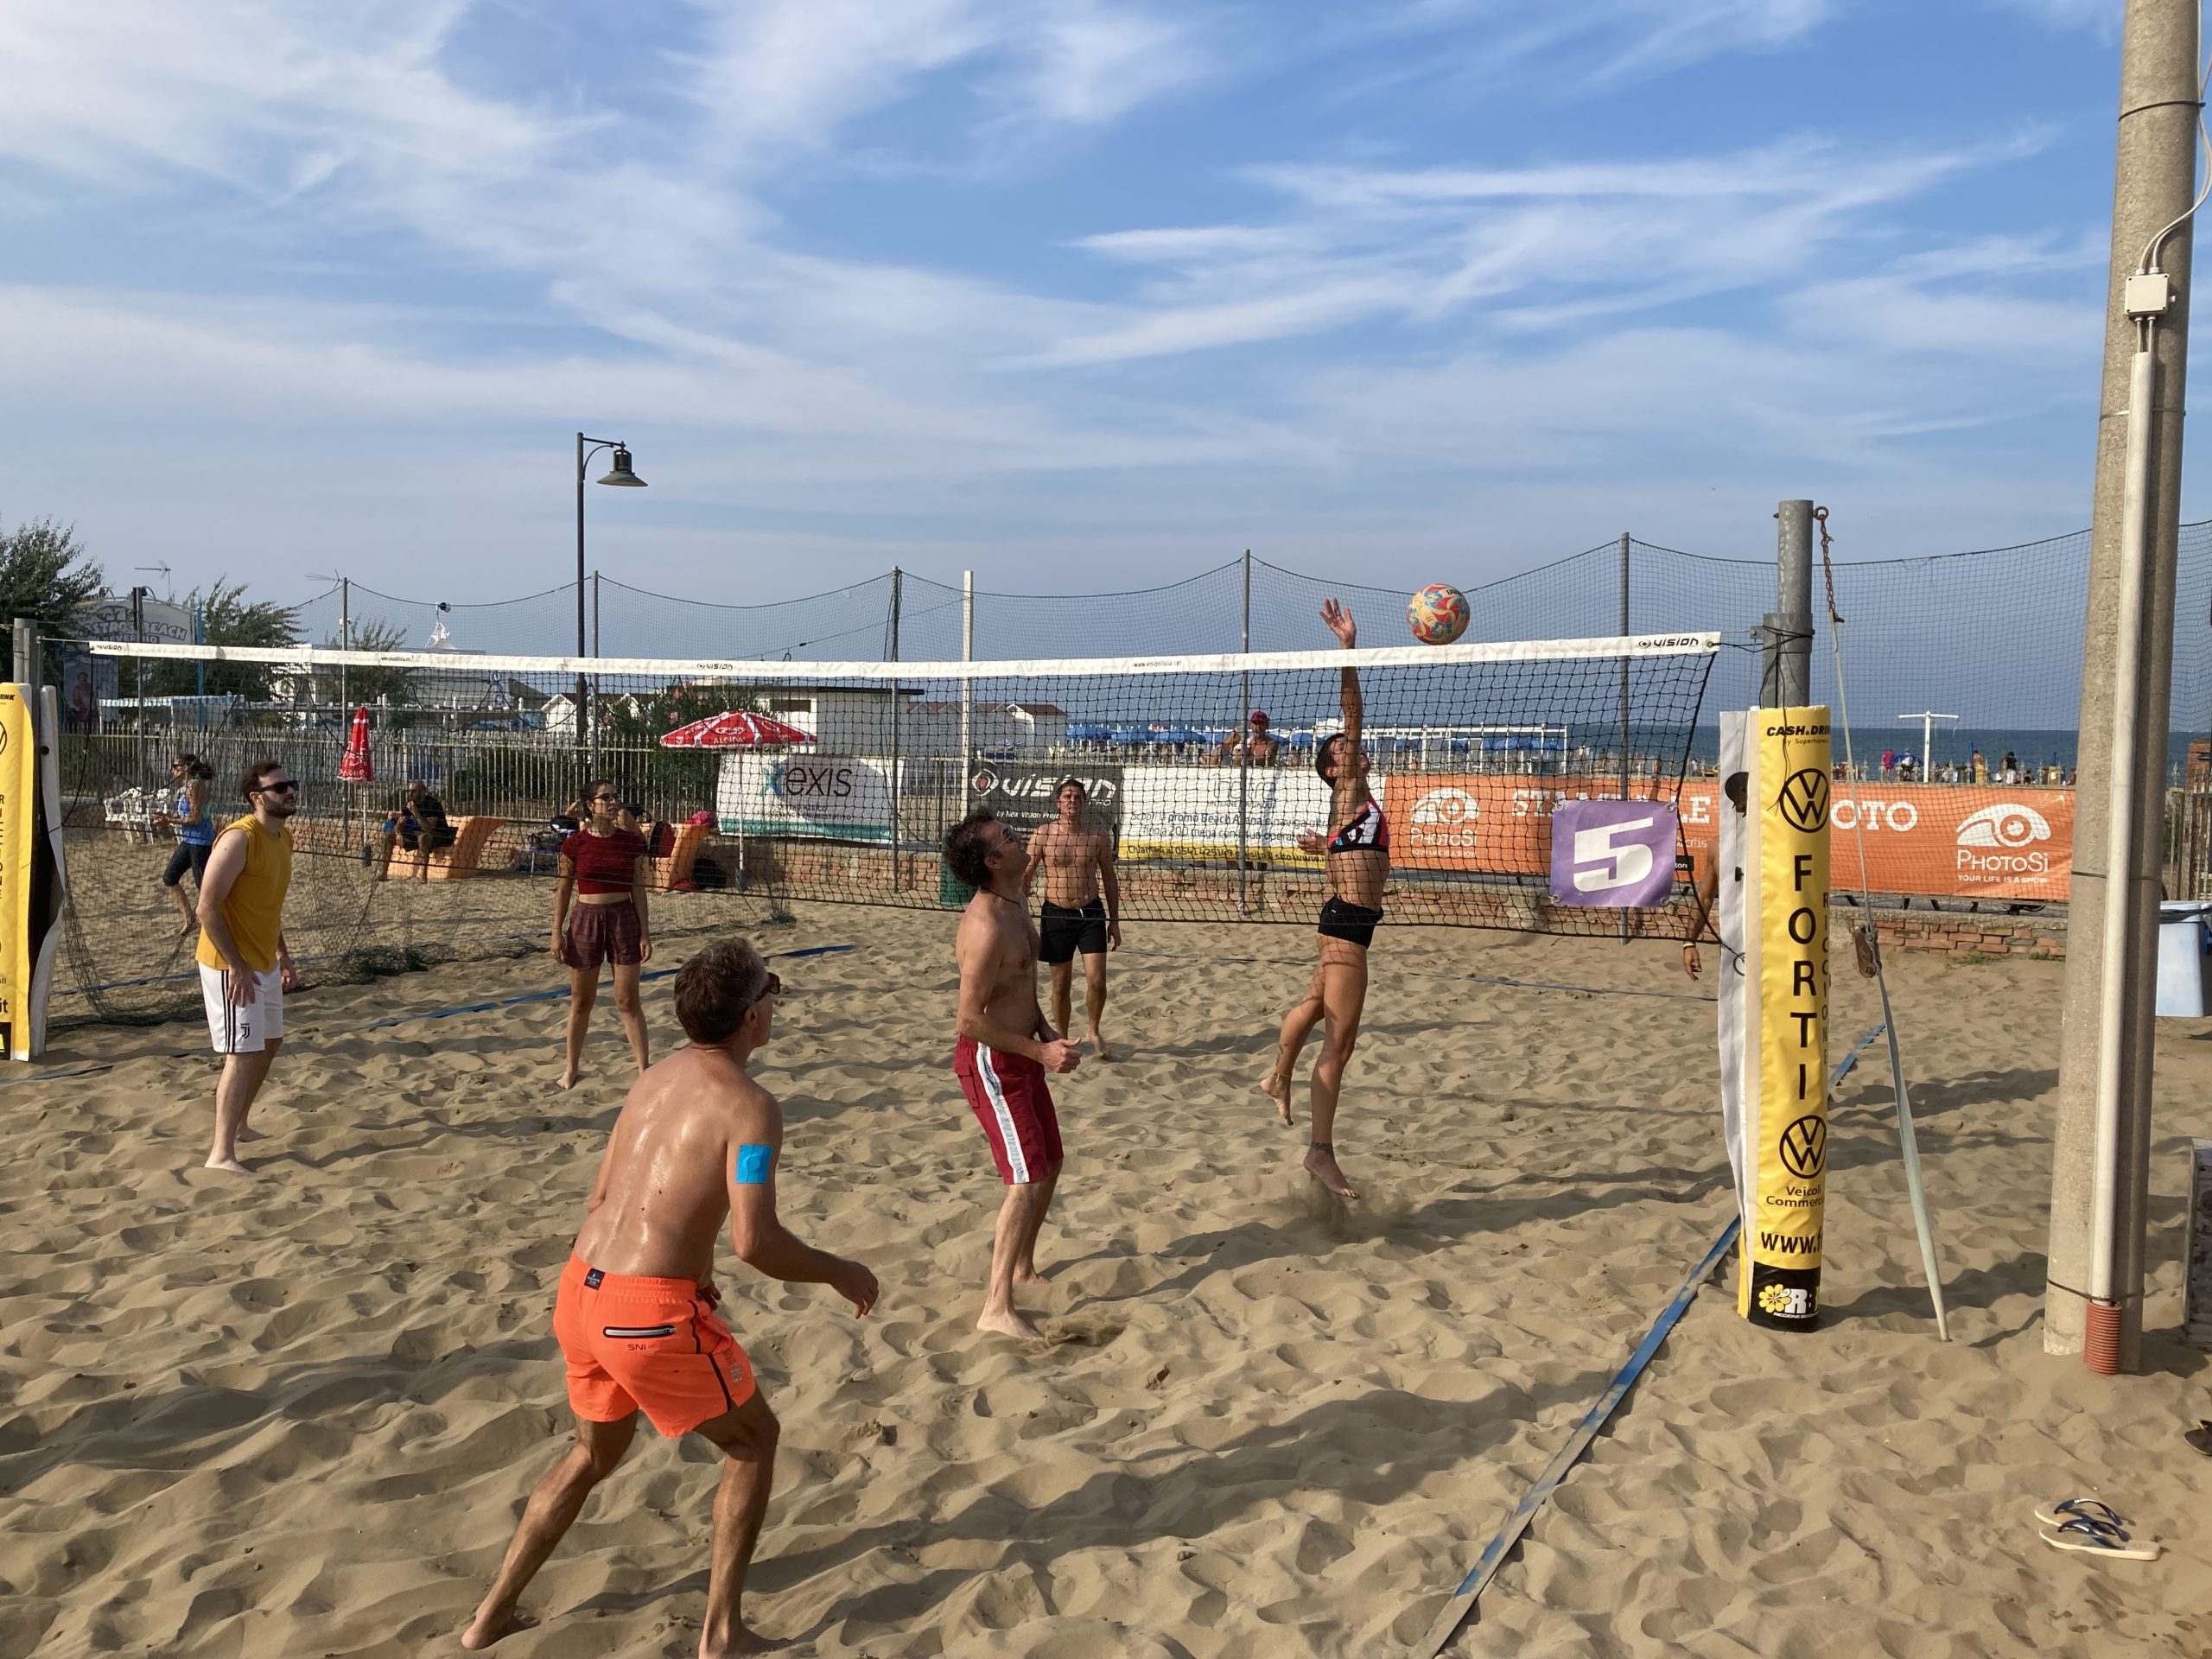 Si Rinnova Il Legame Tra Il Riccione Beach Arena E Diabete Romagna Per Un Programma Tutto All’insegna Dello Sport E Della Solidarietà